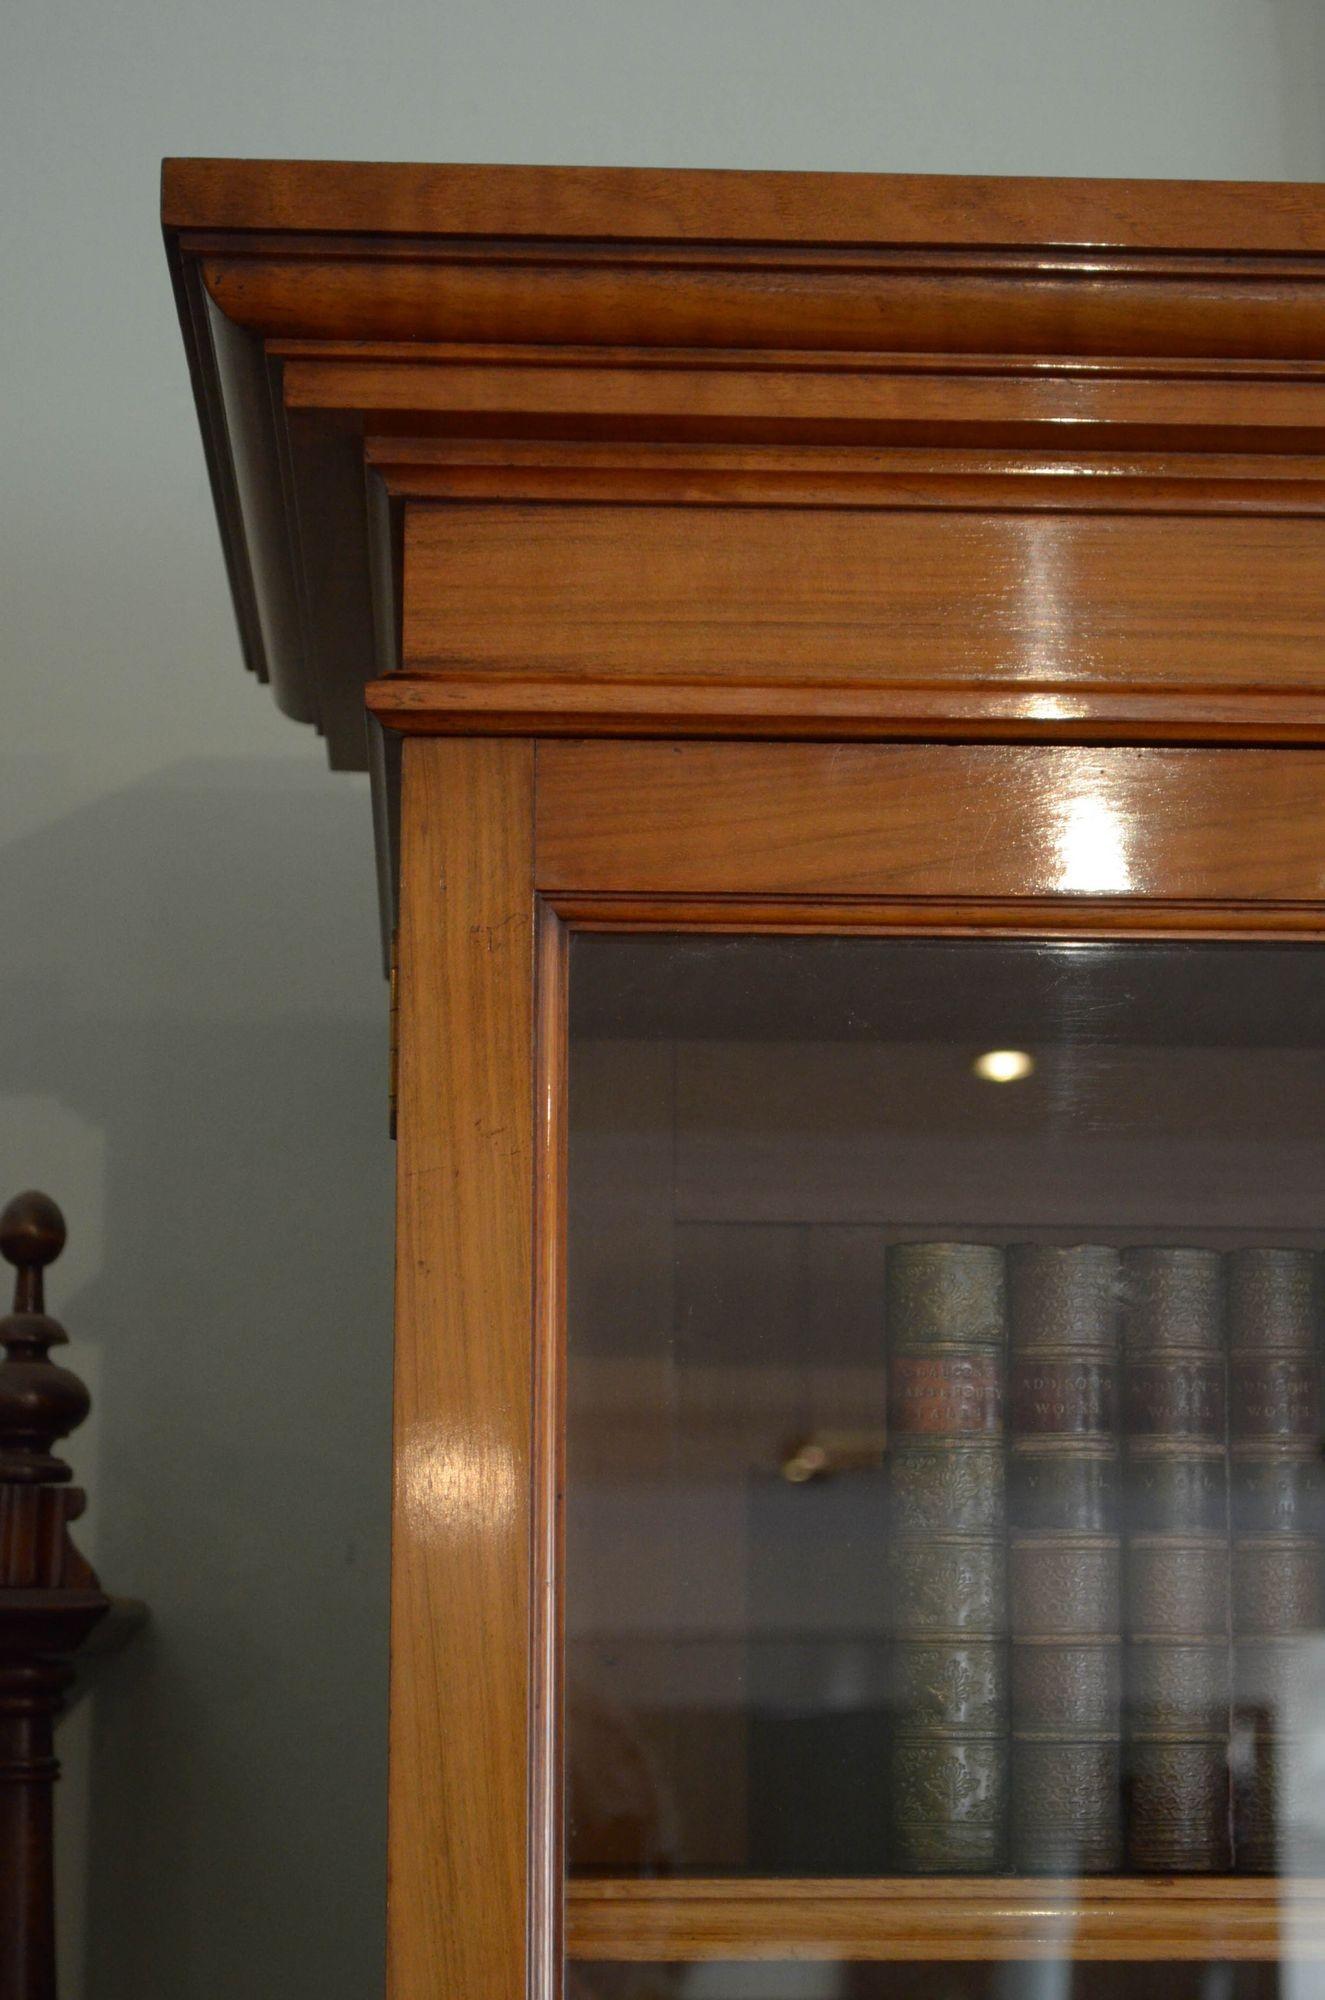 Sn5507 Feine Qualität und sehr attraktiv viktorianischen gemaserten und Wurzelnuss Bücherregal, mit cavetto Gesims über einem Paar von Projektion verglaste Türen flankiert von weiteren vertieften Glastüren, die alle mit original funktionierenden